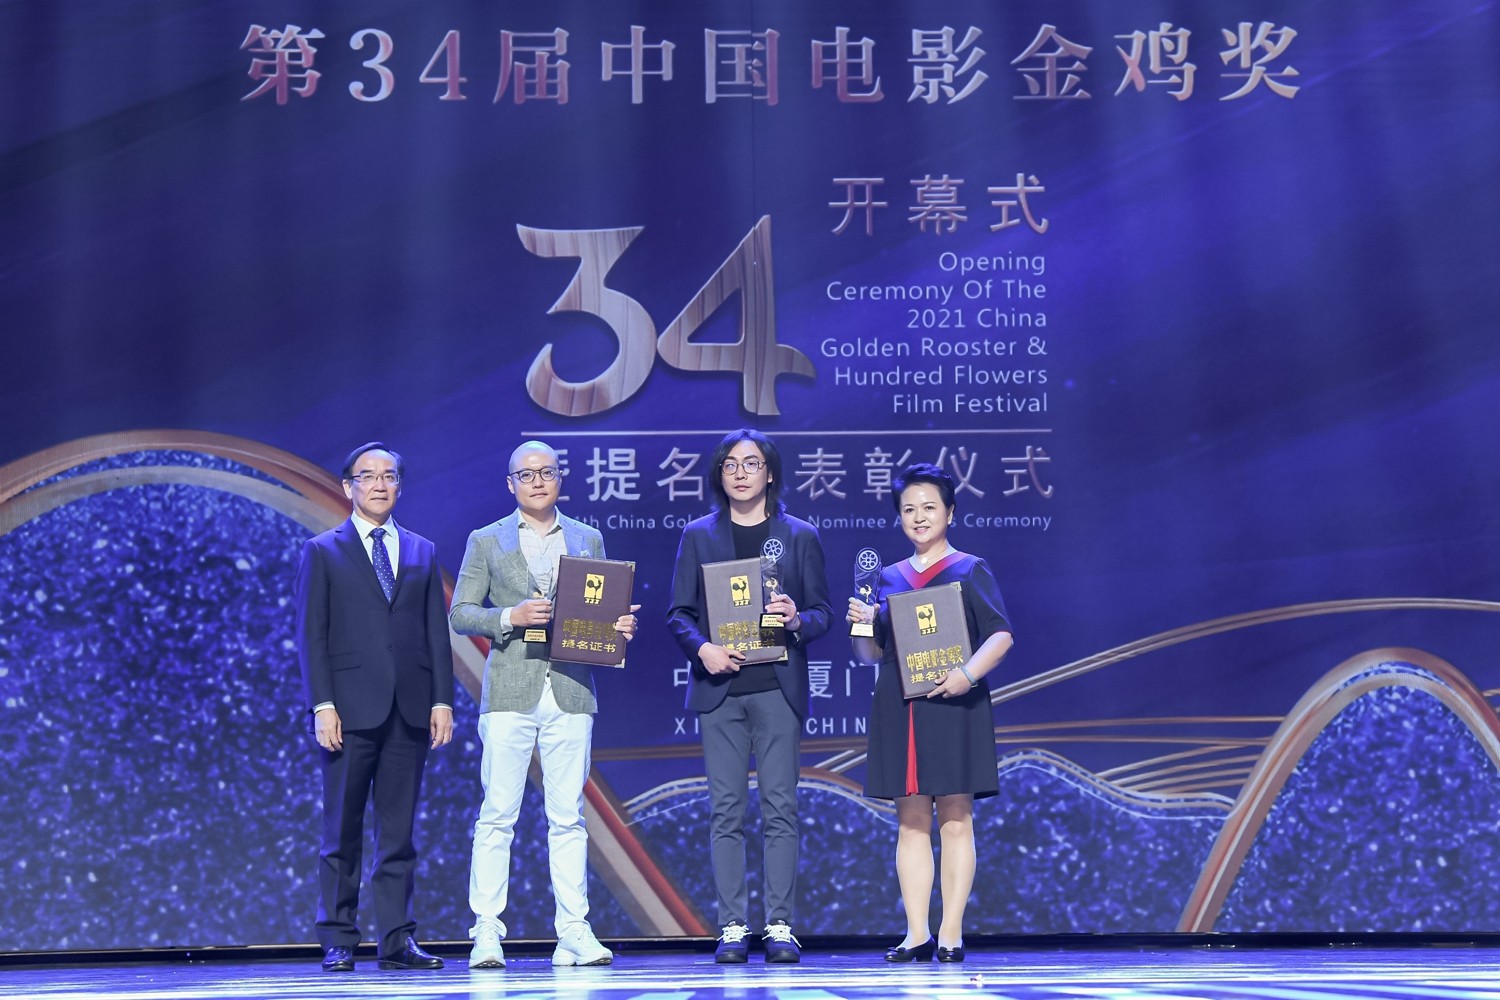 2021年中国金鸡百花电影节暨第34届中国电影金鸡奖新闻发布会在厦门